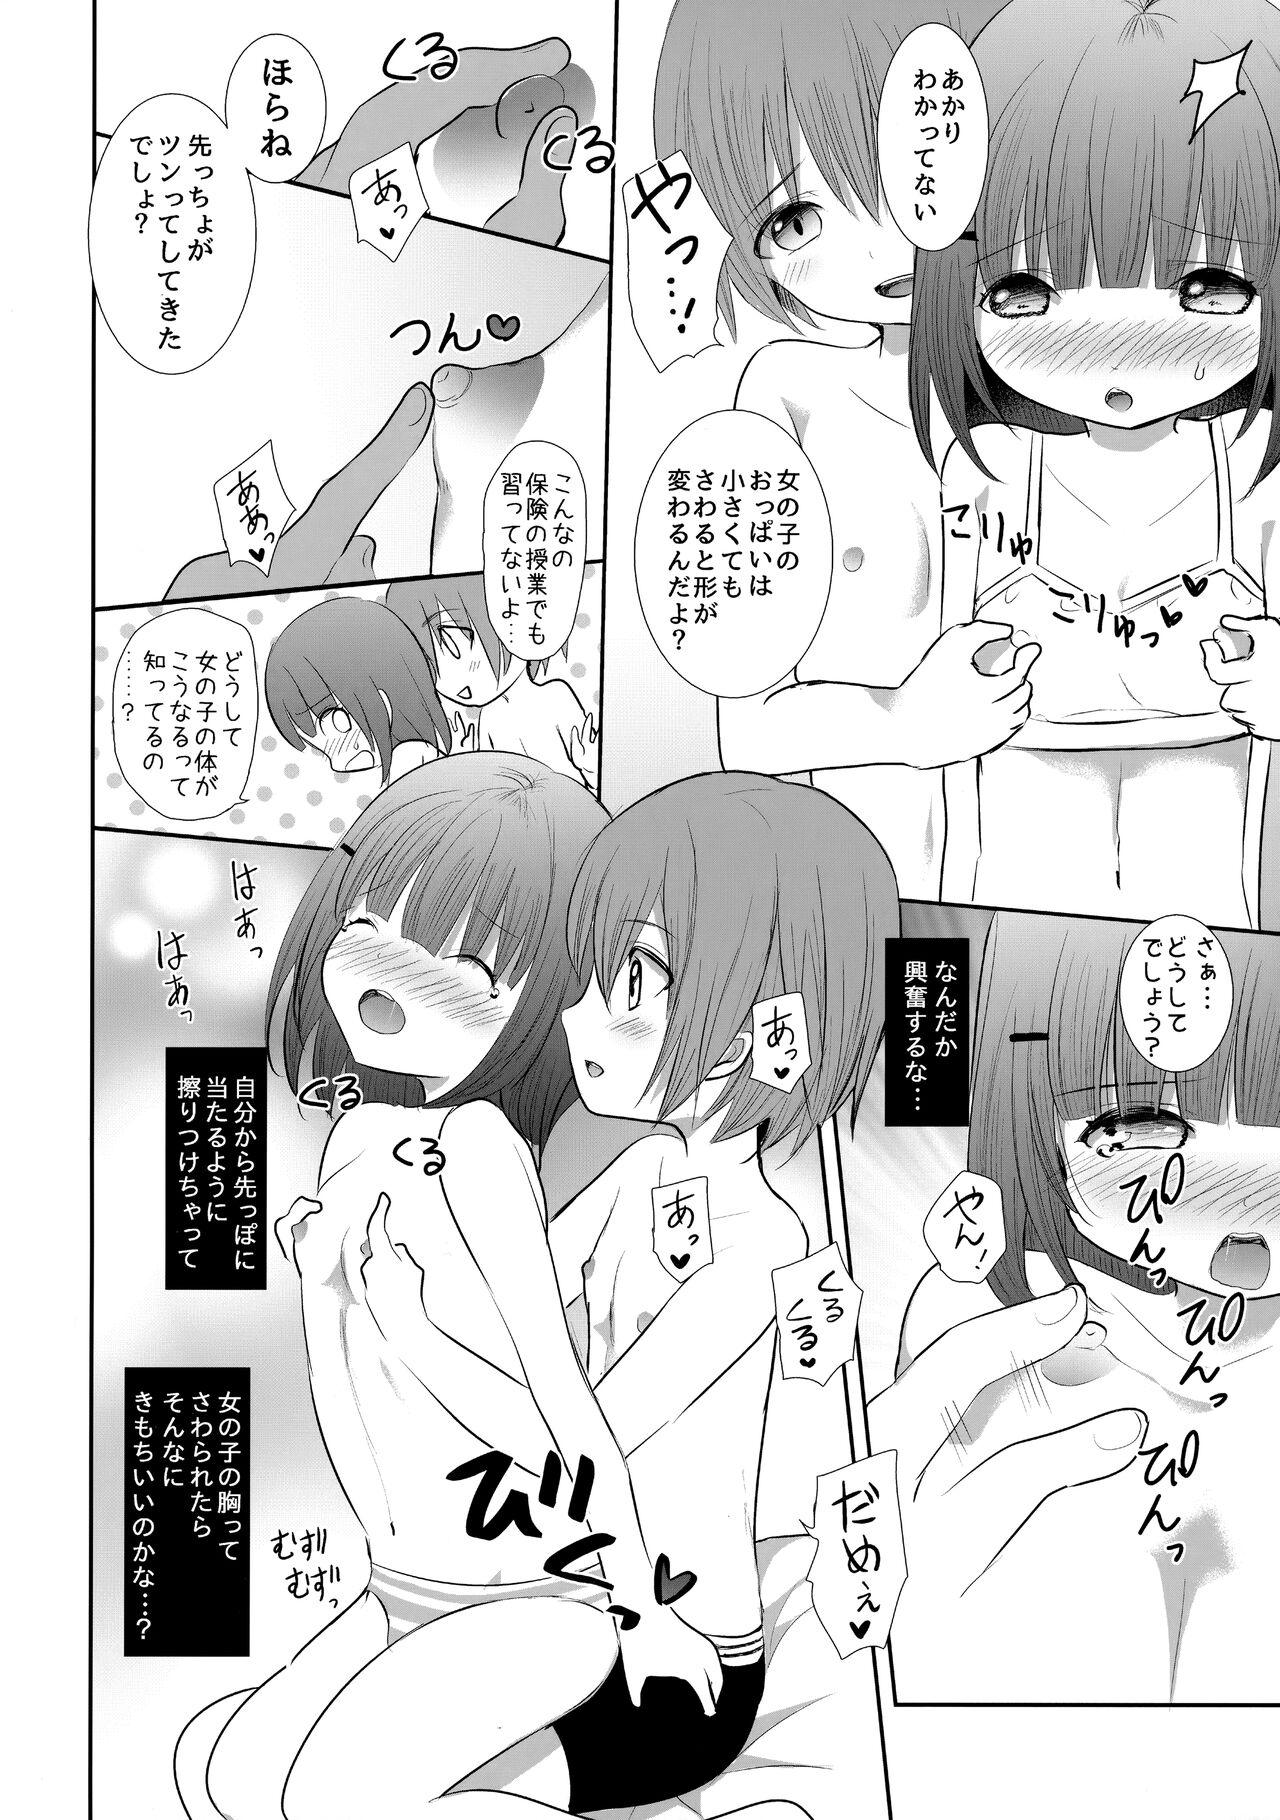 8teenxxx Nippurukisu Kara Hajimemasen ka? - Original Teen Porn - Page 11